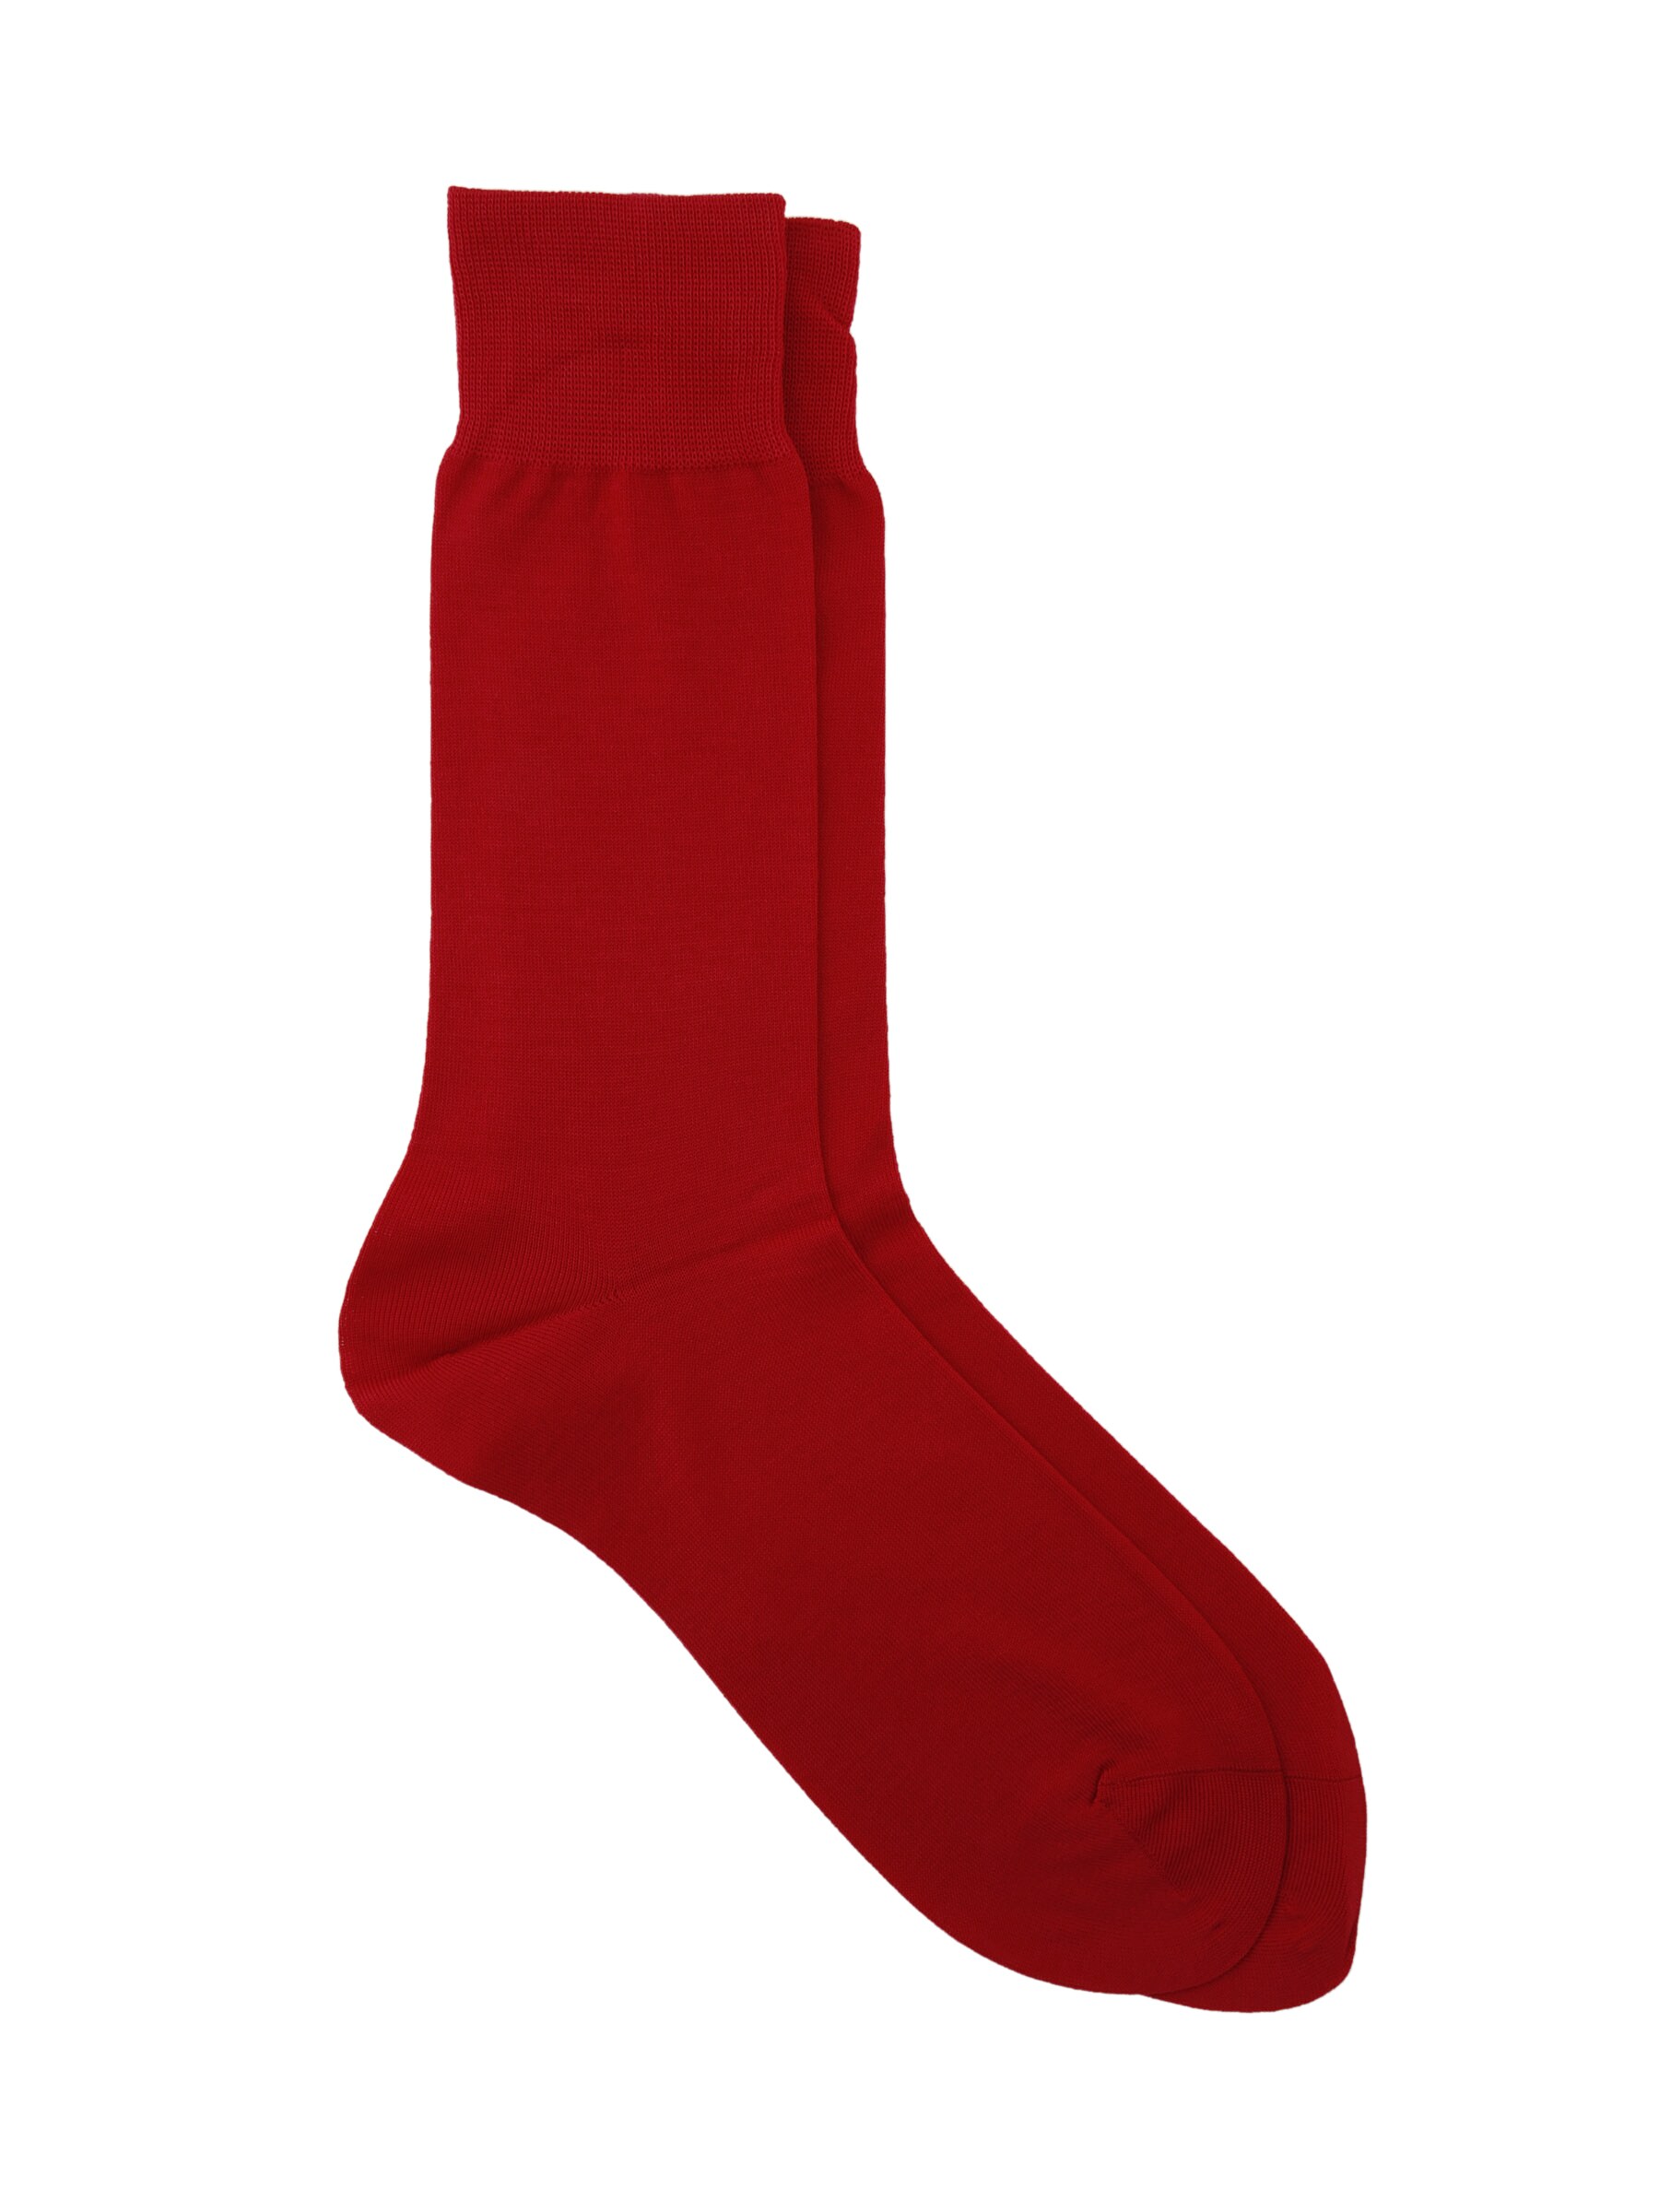 Reid & Taylor Men Solid Red Socks